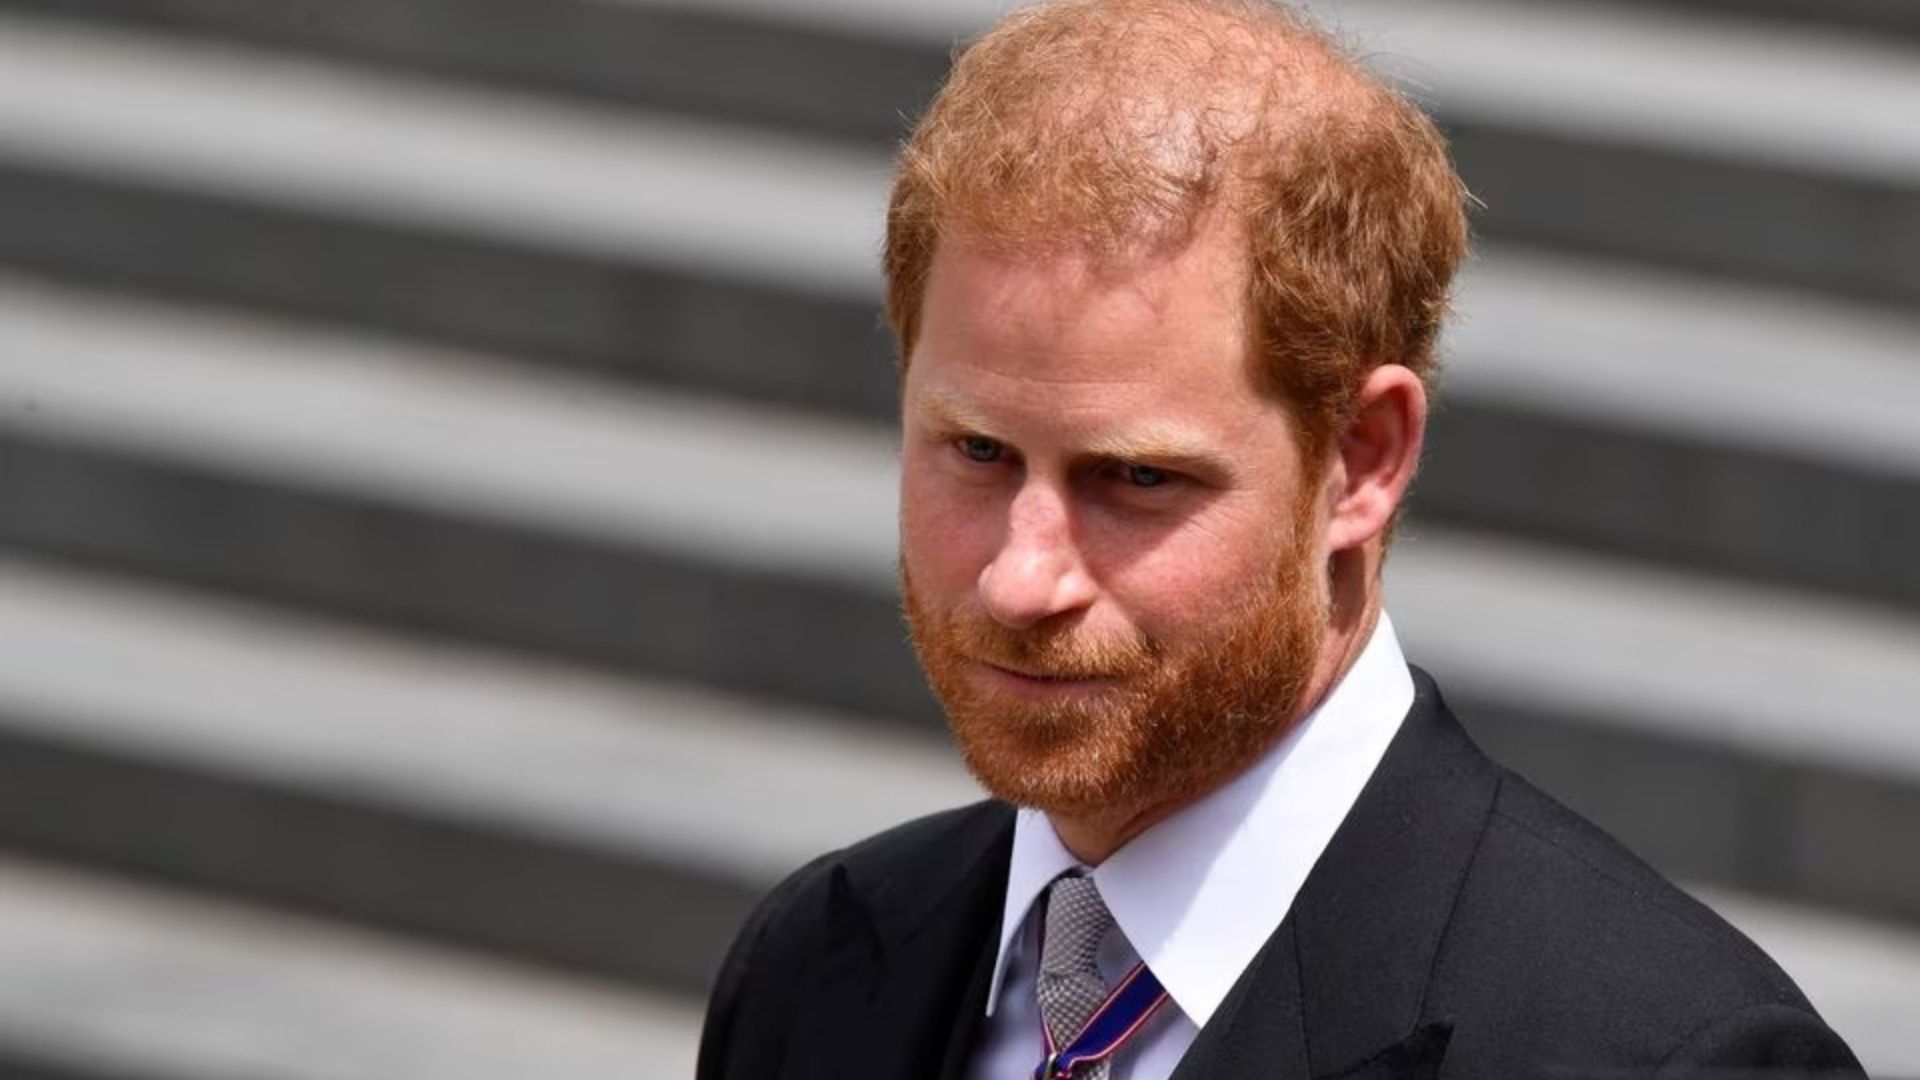 Segundo a rede britânica BBC, caçula do monarca deixa clara a vontade de não encontrar William